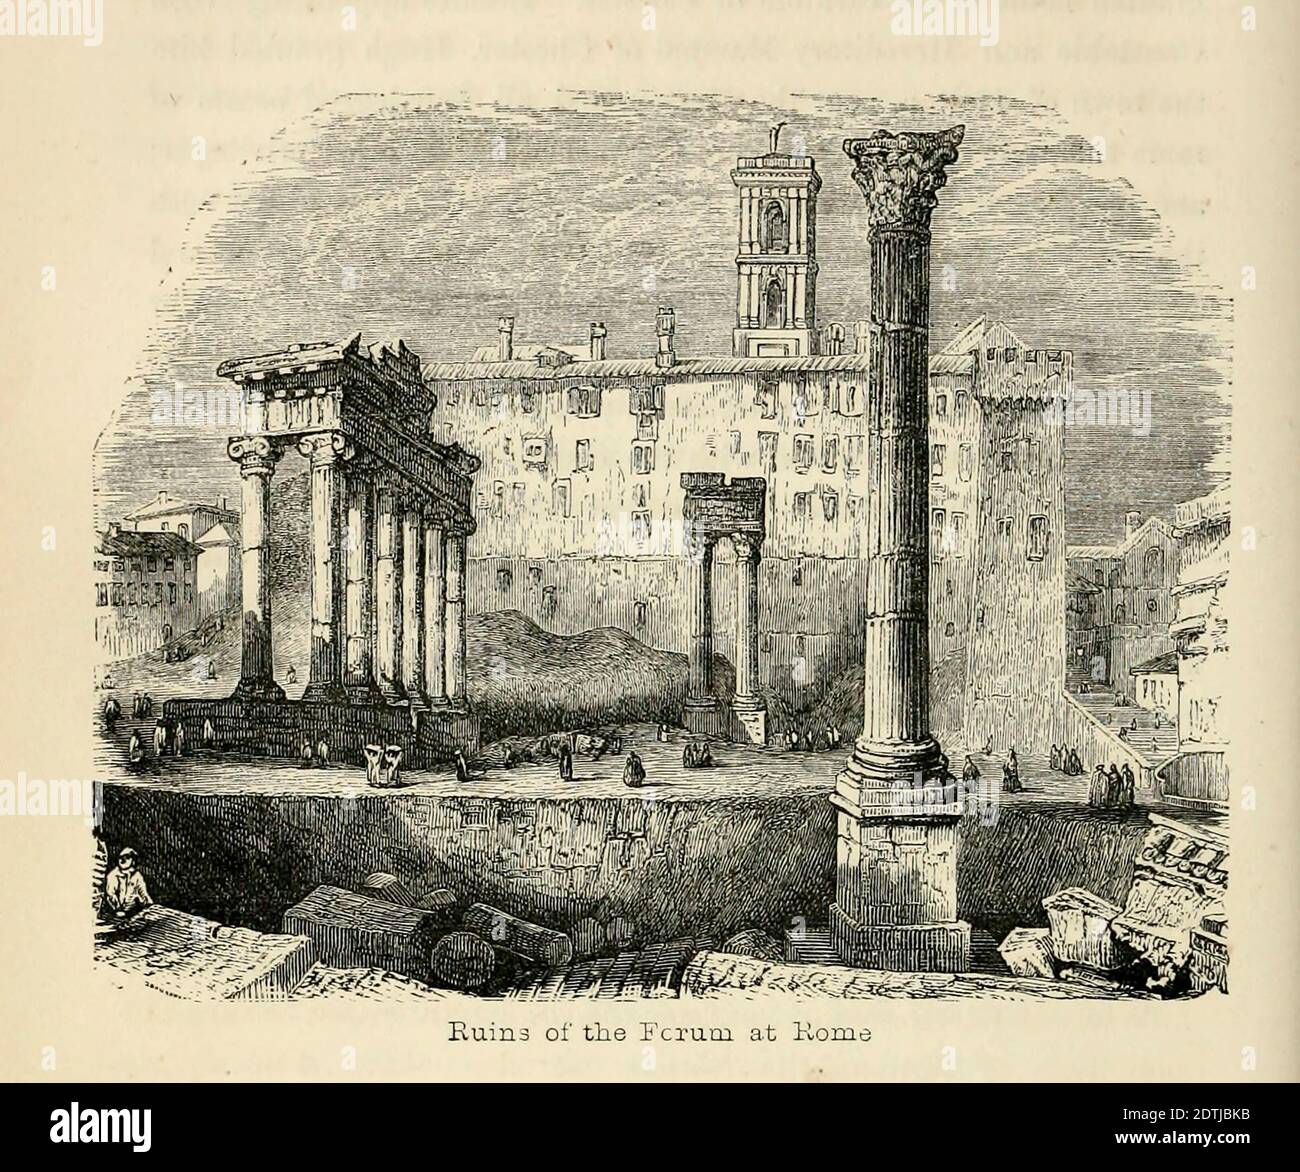 Ruinen des Forums in Rom aus dem Buch 'die Heiligen, Sachsen und Normannen : oder, Geschichten unserer Vorfahren' von Edgar, J. G. (John George), 1834-1864 Veröffentlicht 1863 in London Stockfoto